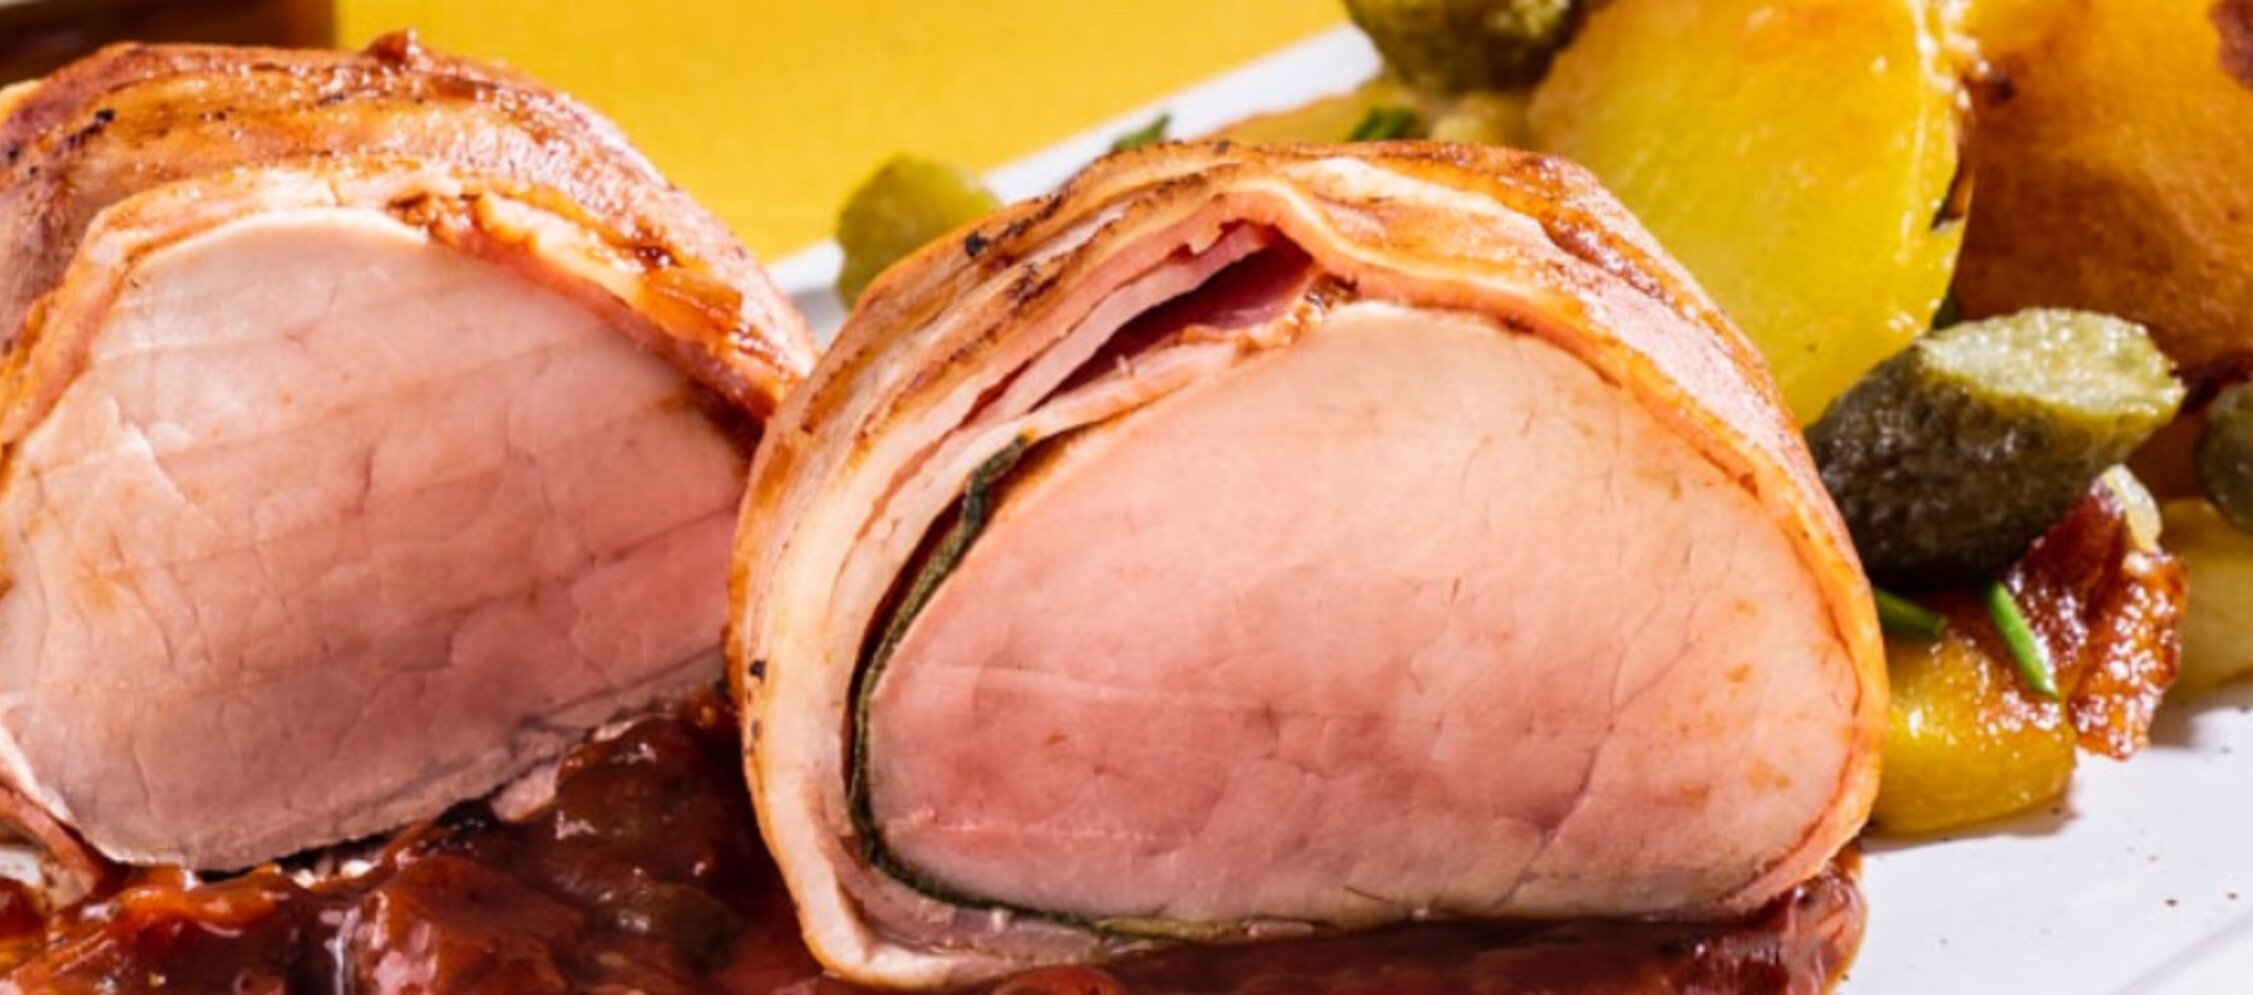 Schweinefilet im Speckmantel mit Bratkartoffel-Cornichon-Salat